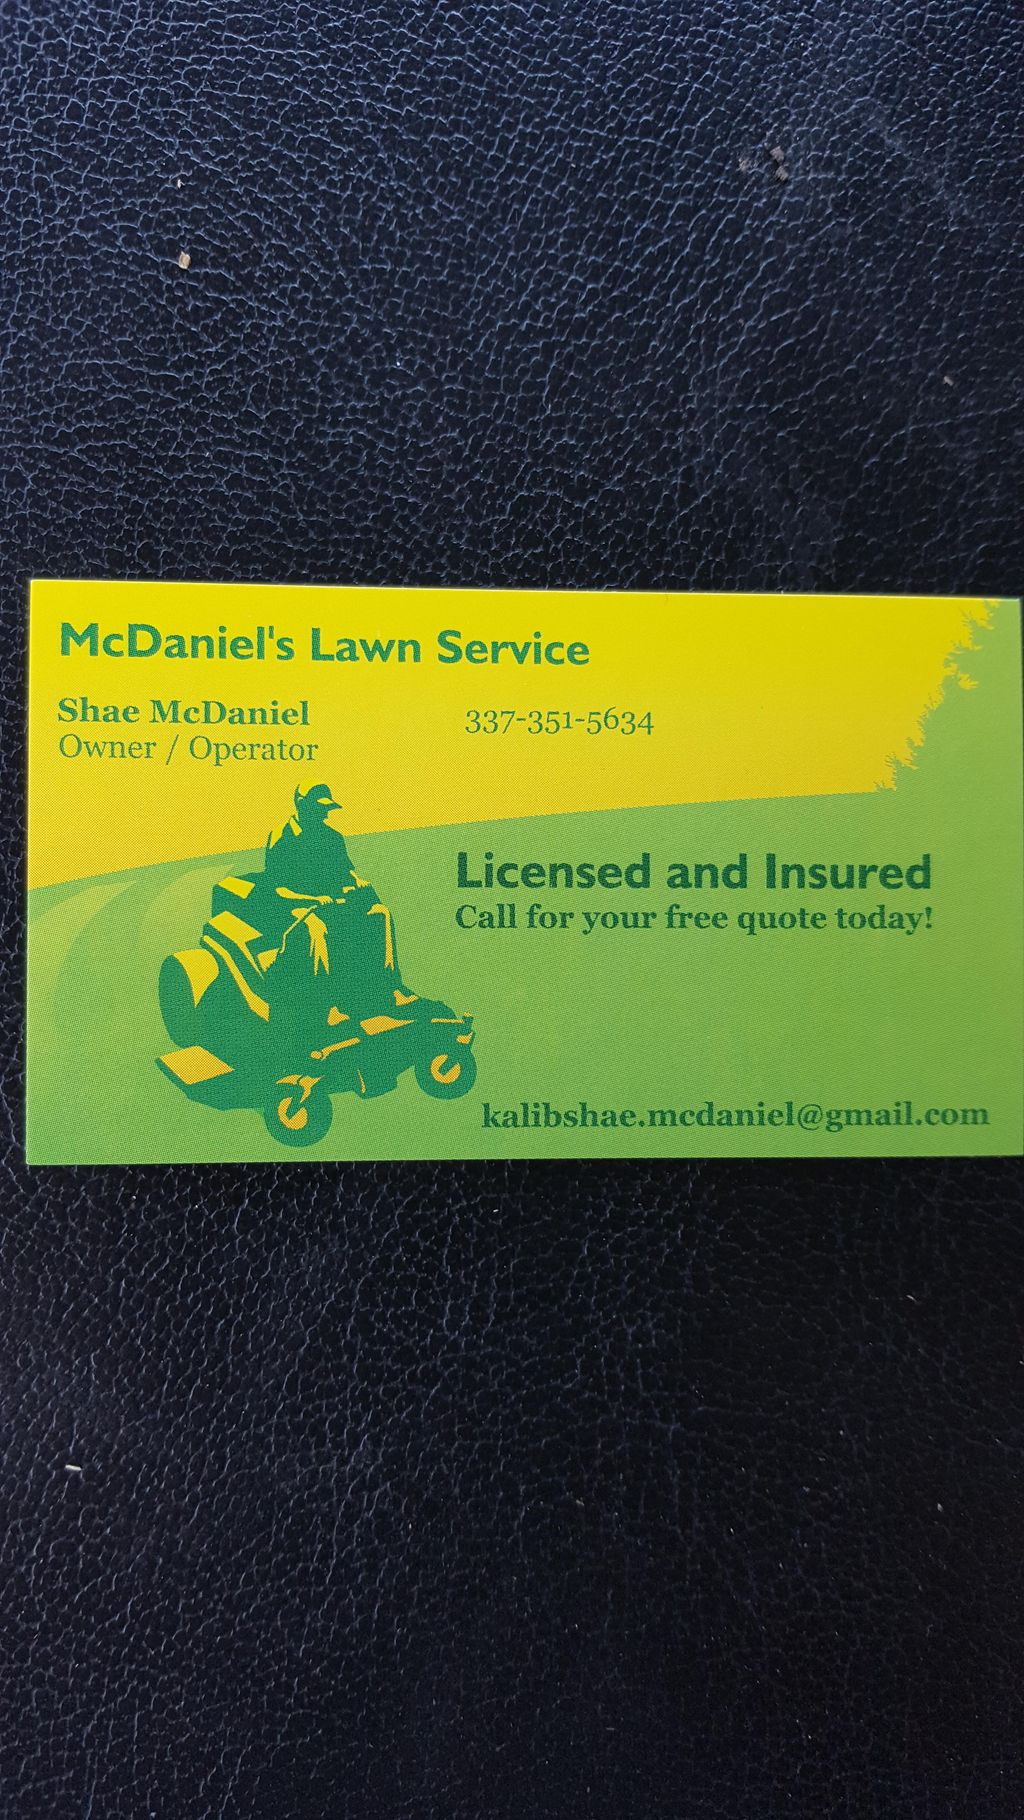 McDaniels Lawn Service